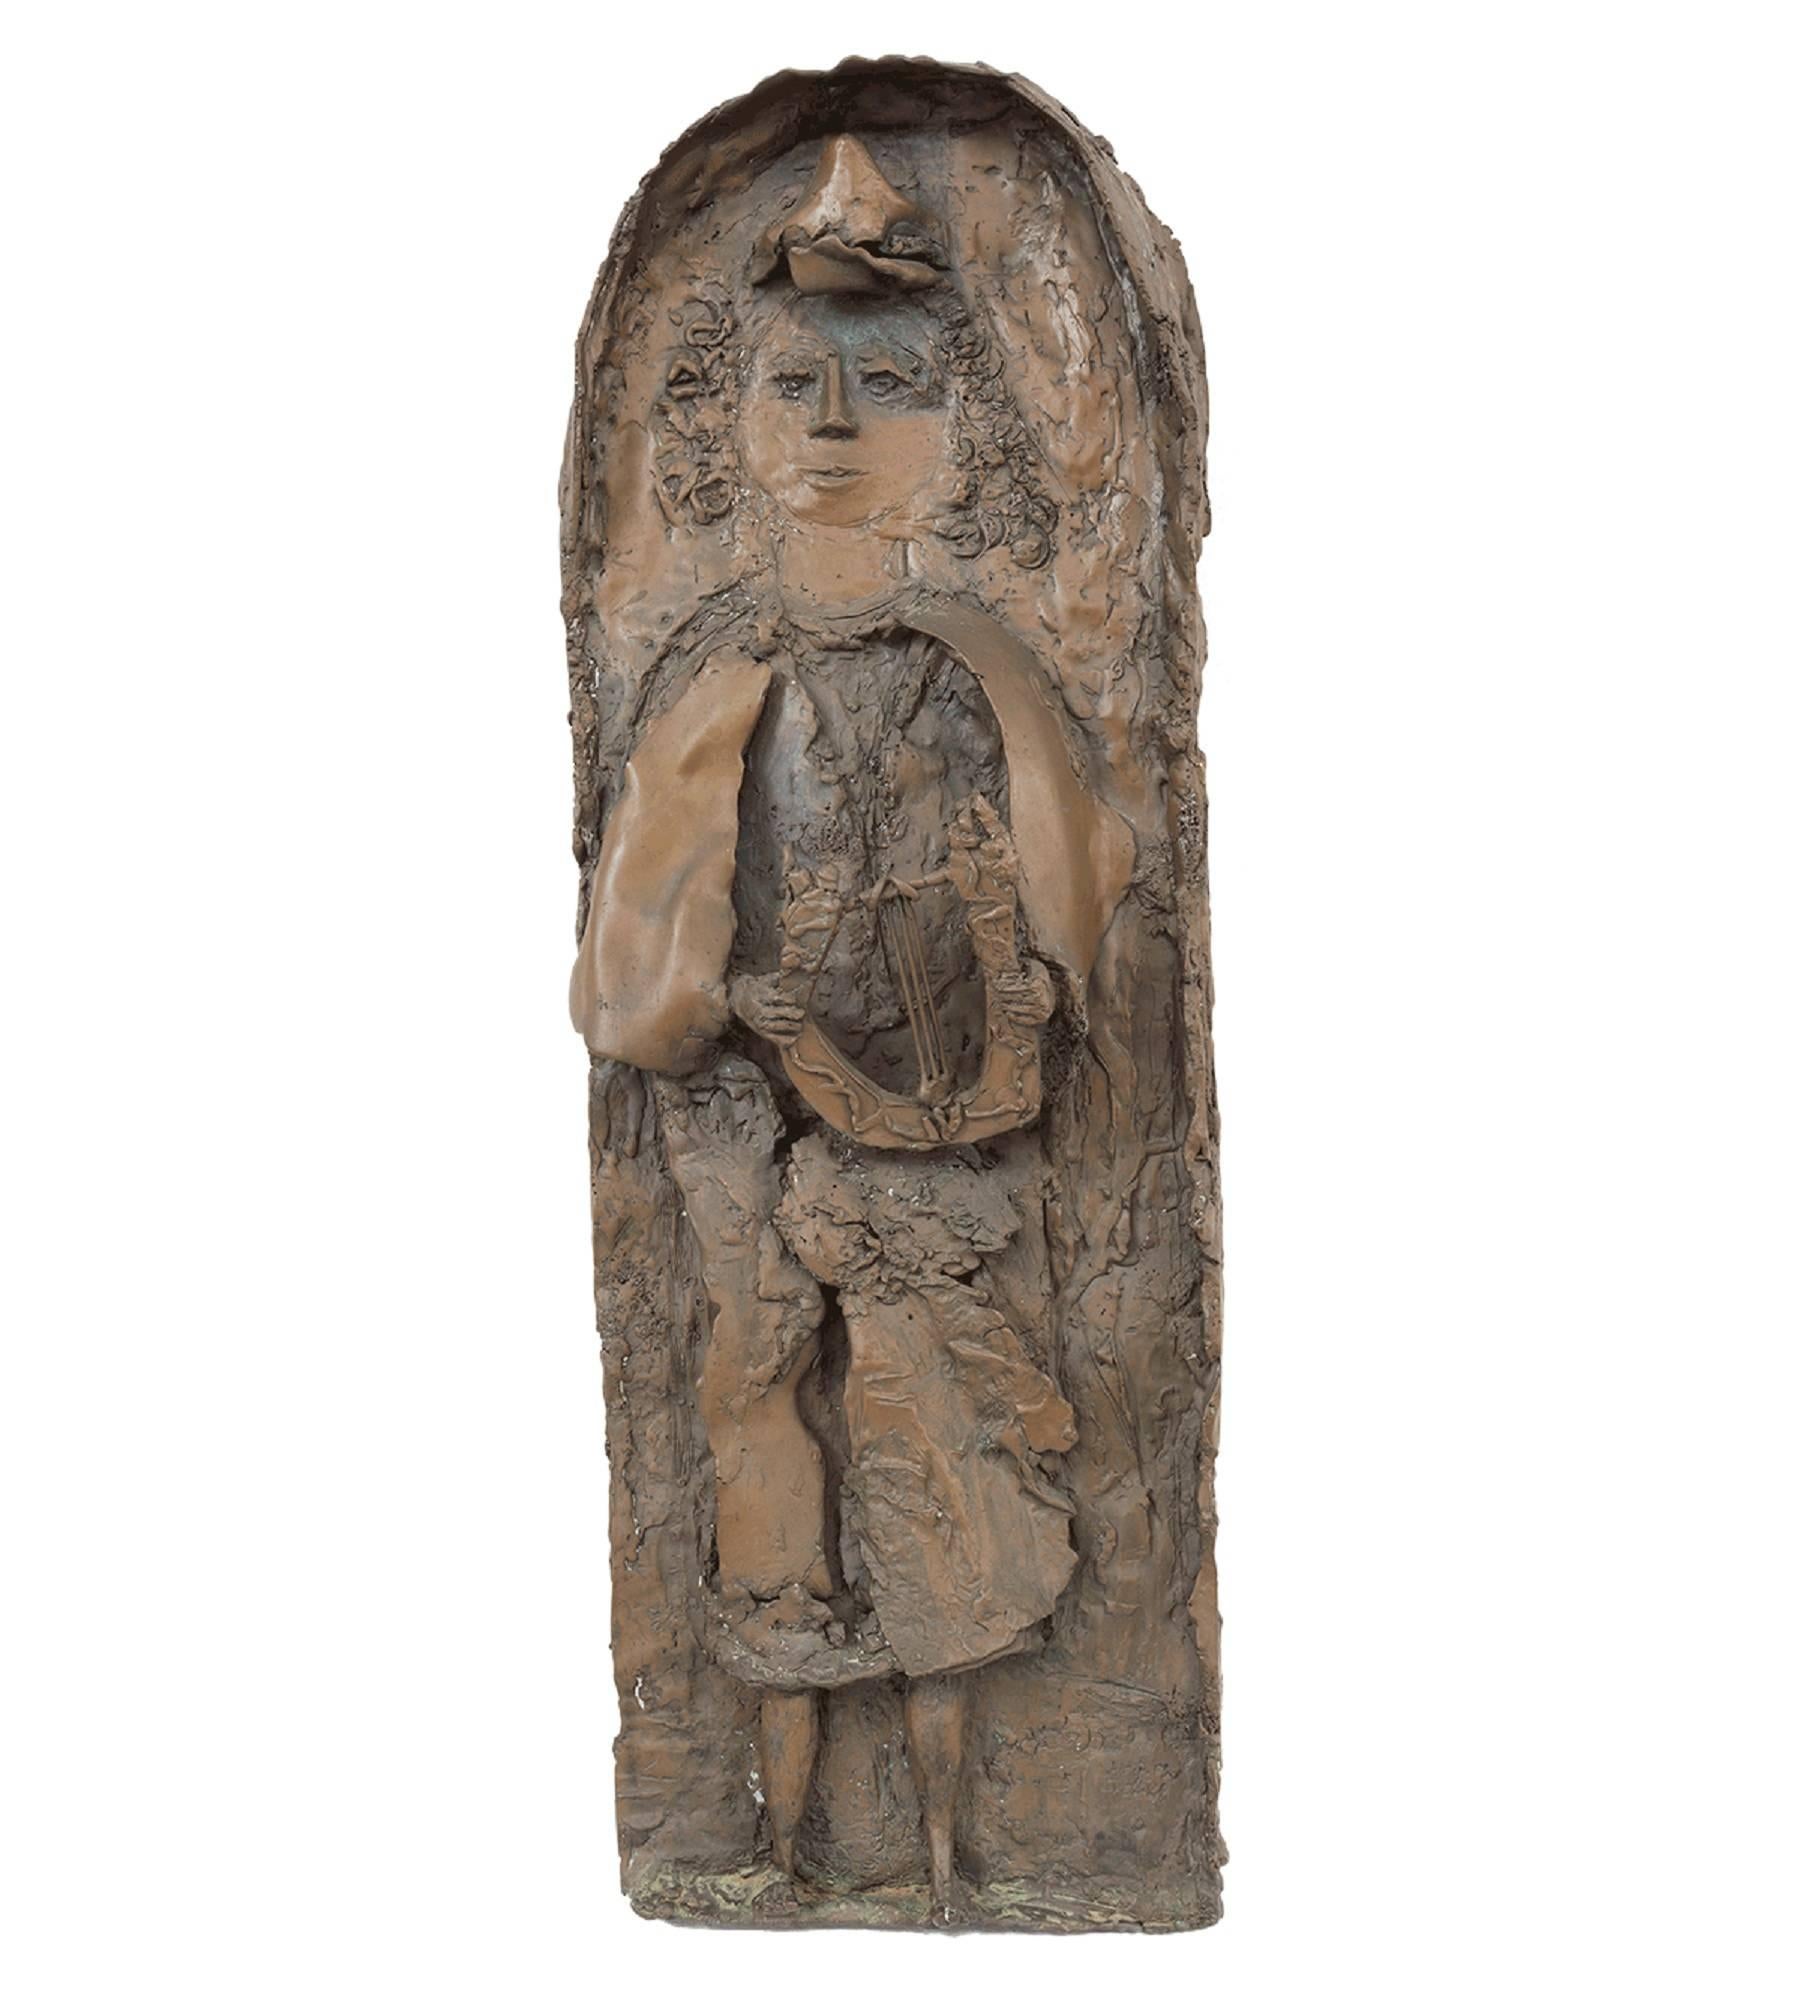 Hana Geber Figurative Sculpture - Heavy Bronze Relief Plaque, Young King David with Harp